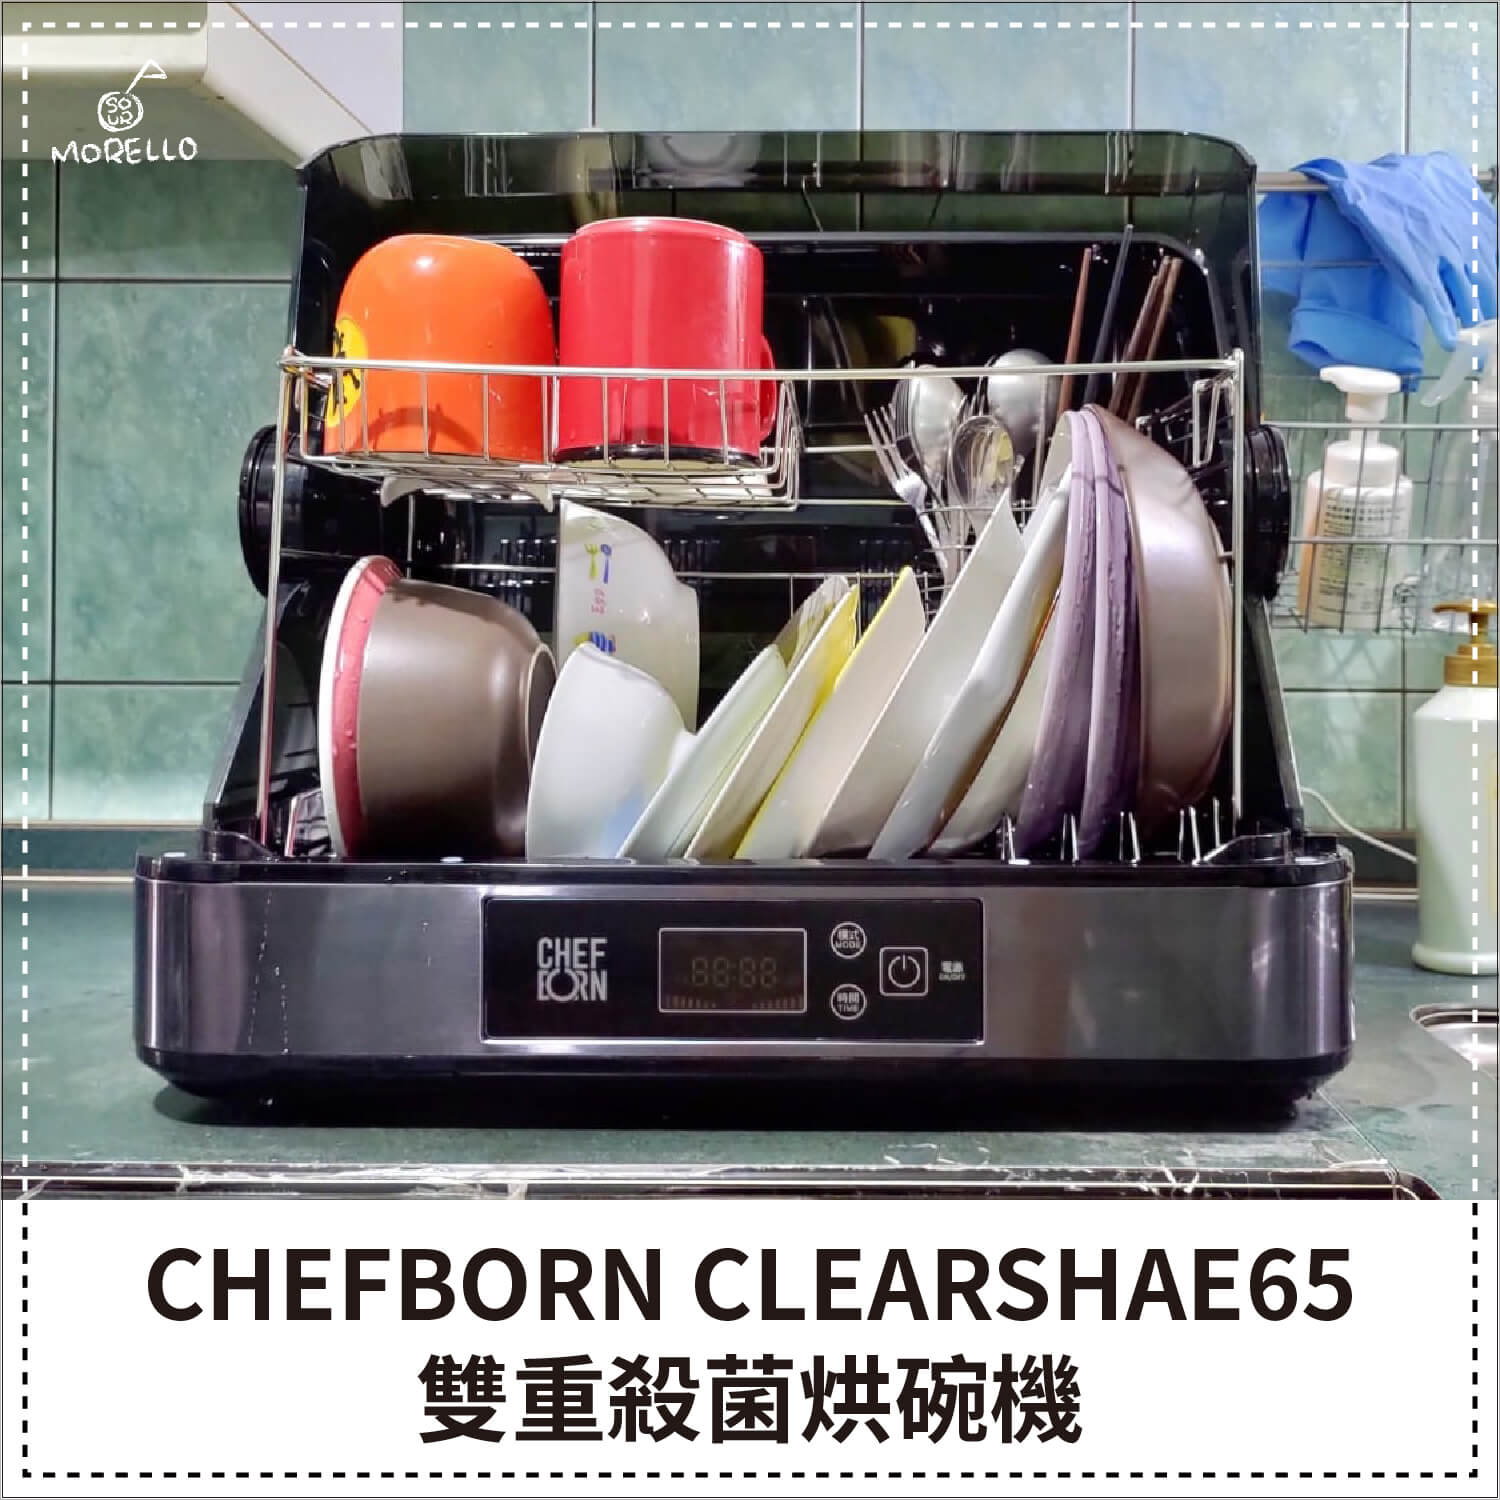 CHEFBORN 是 CHEF（廚師）＋BORN（出生）的複合詞，是韓國的高級廚房用品品牌。致力於生產在烹飪後可以簡單操作的家電，用以實現高質量的烹飪、清潔和維護的一個品牌。